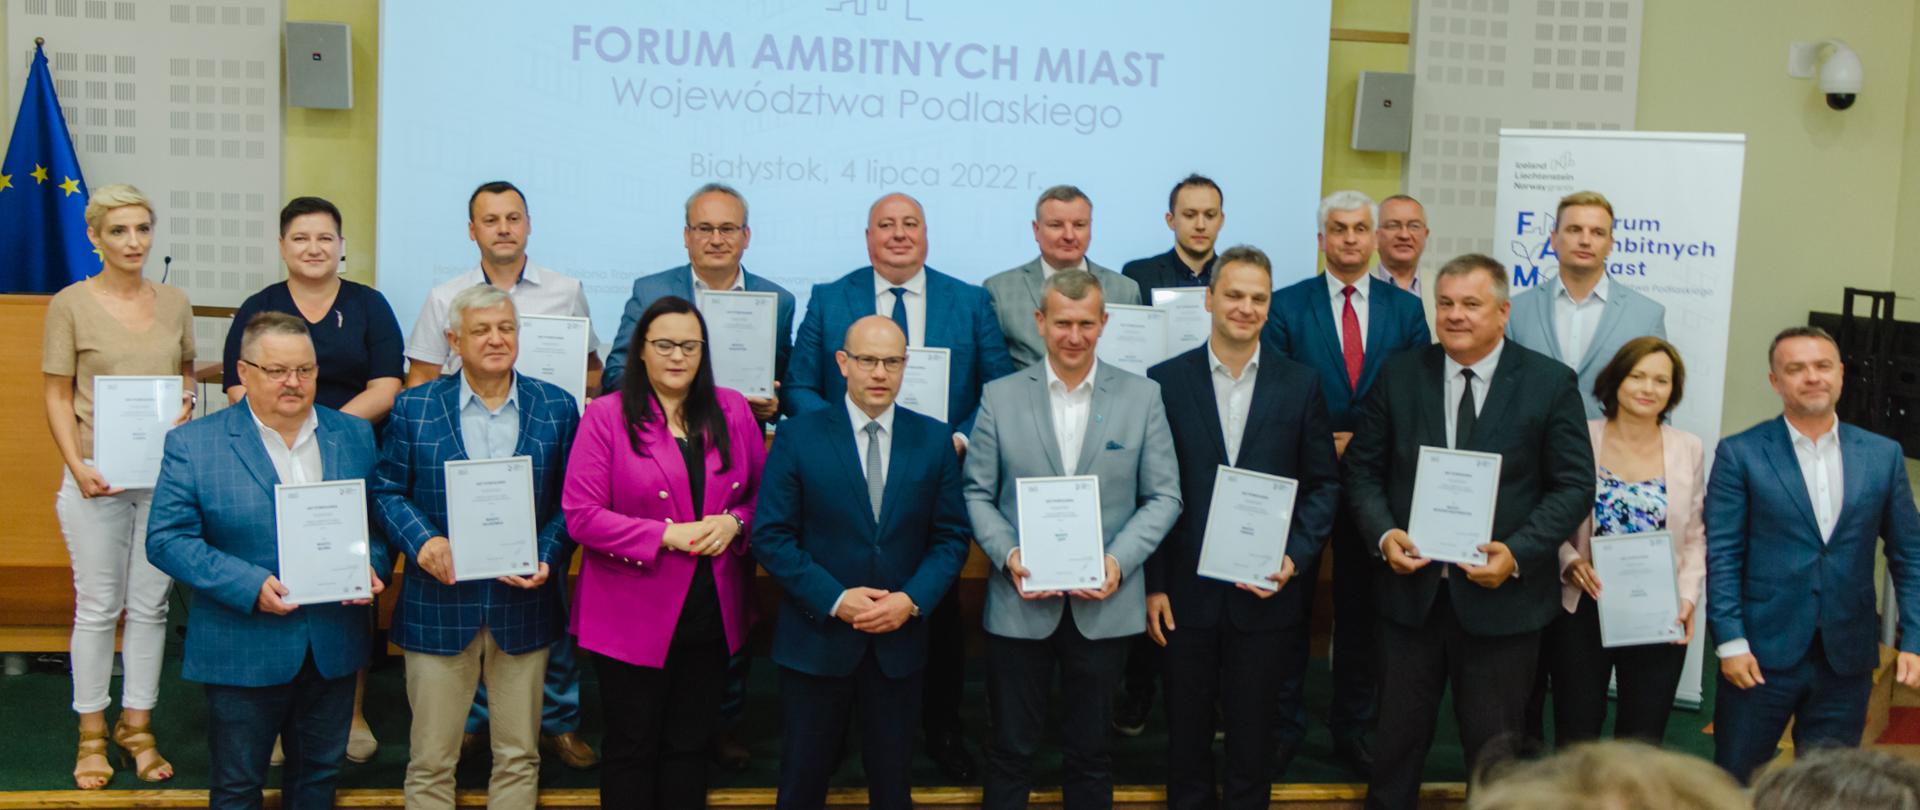 Inauguracja Forum Ambitnych Miast Województwa Podlaskiego